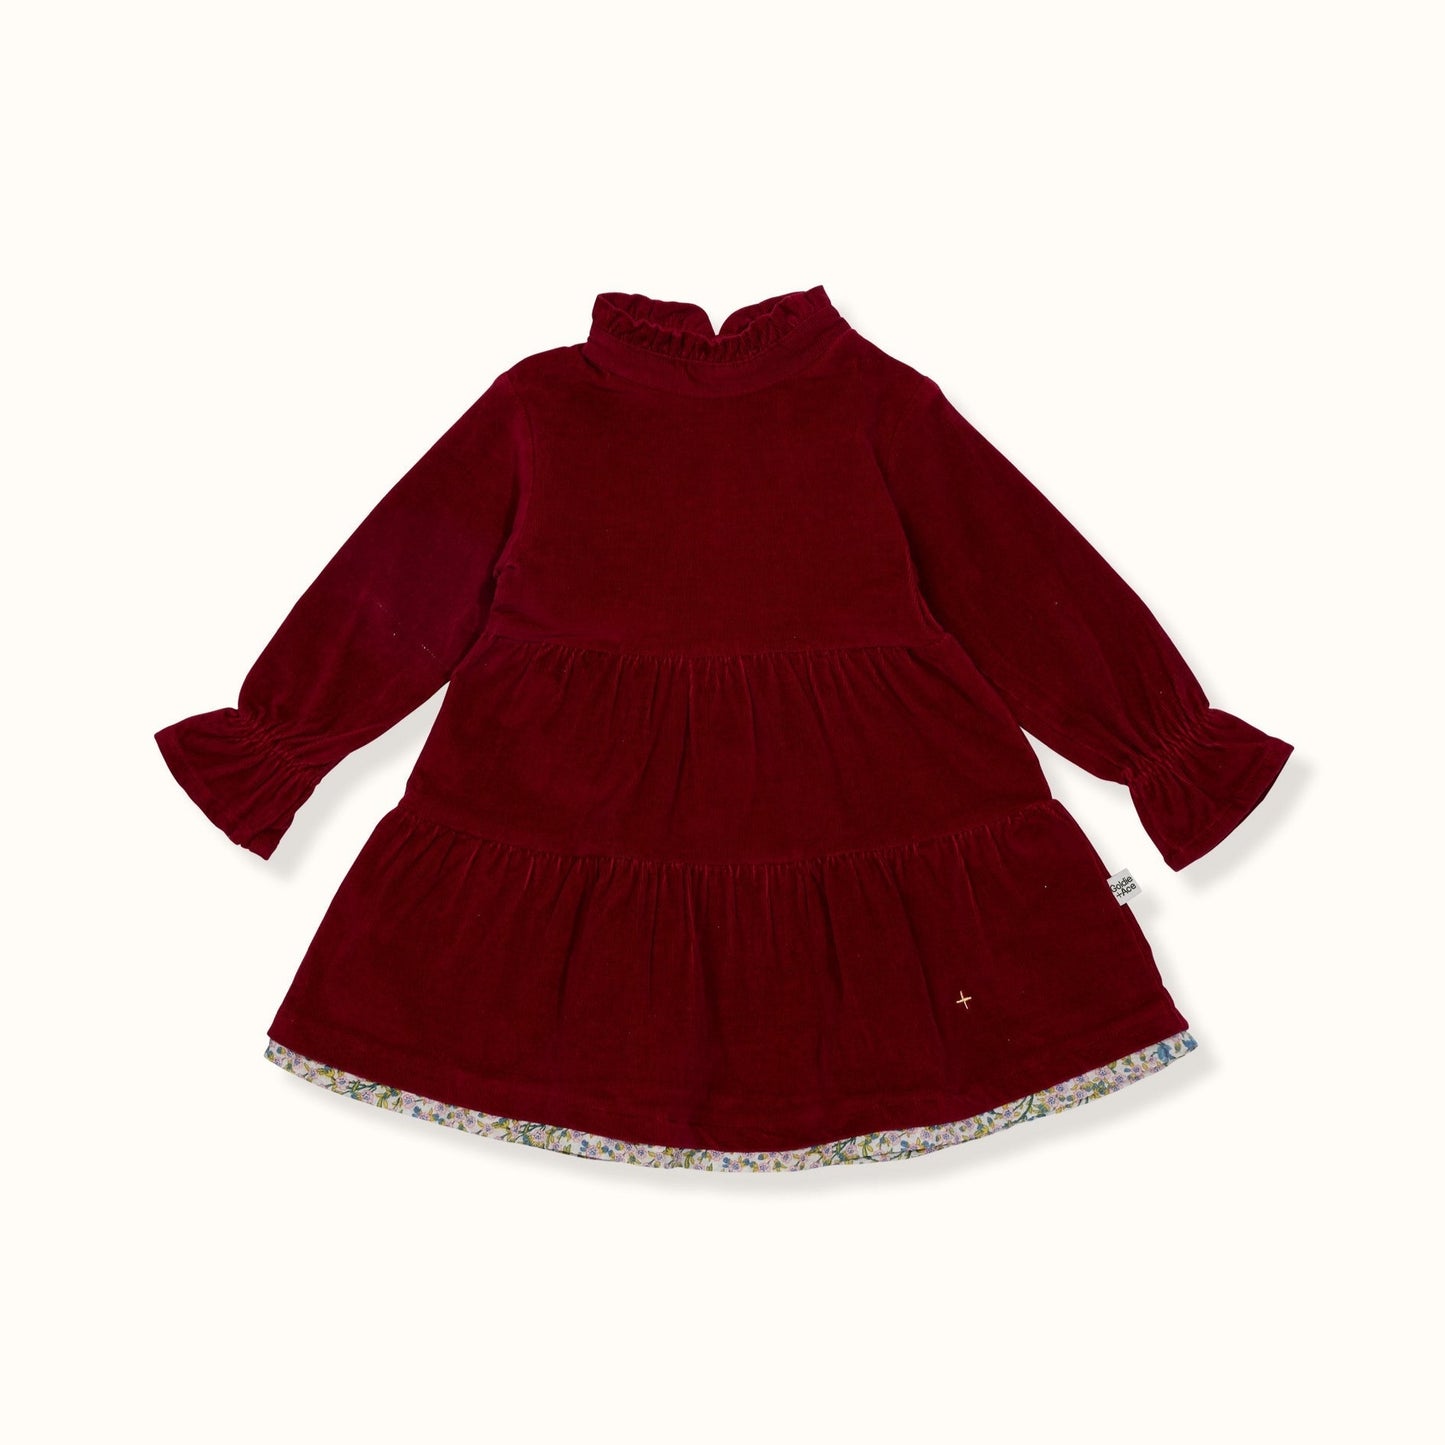 Lottie Corduroy Dress Ruby